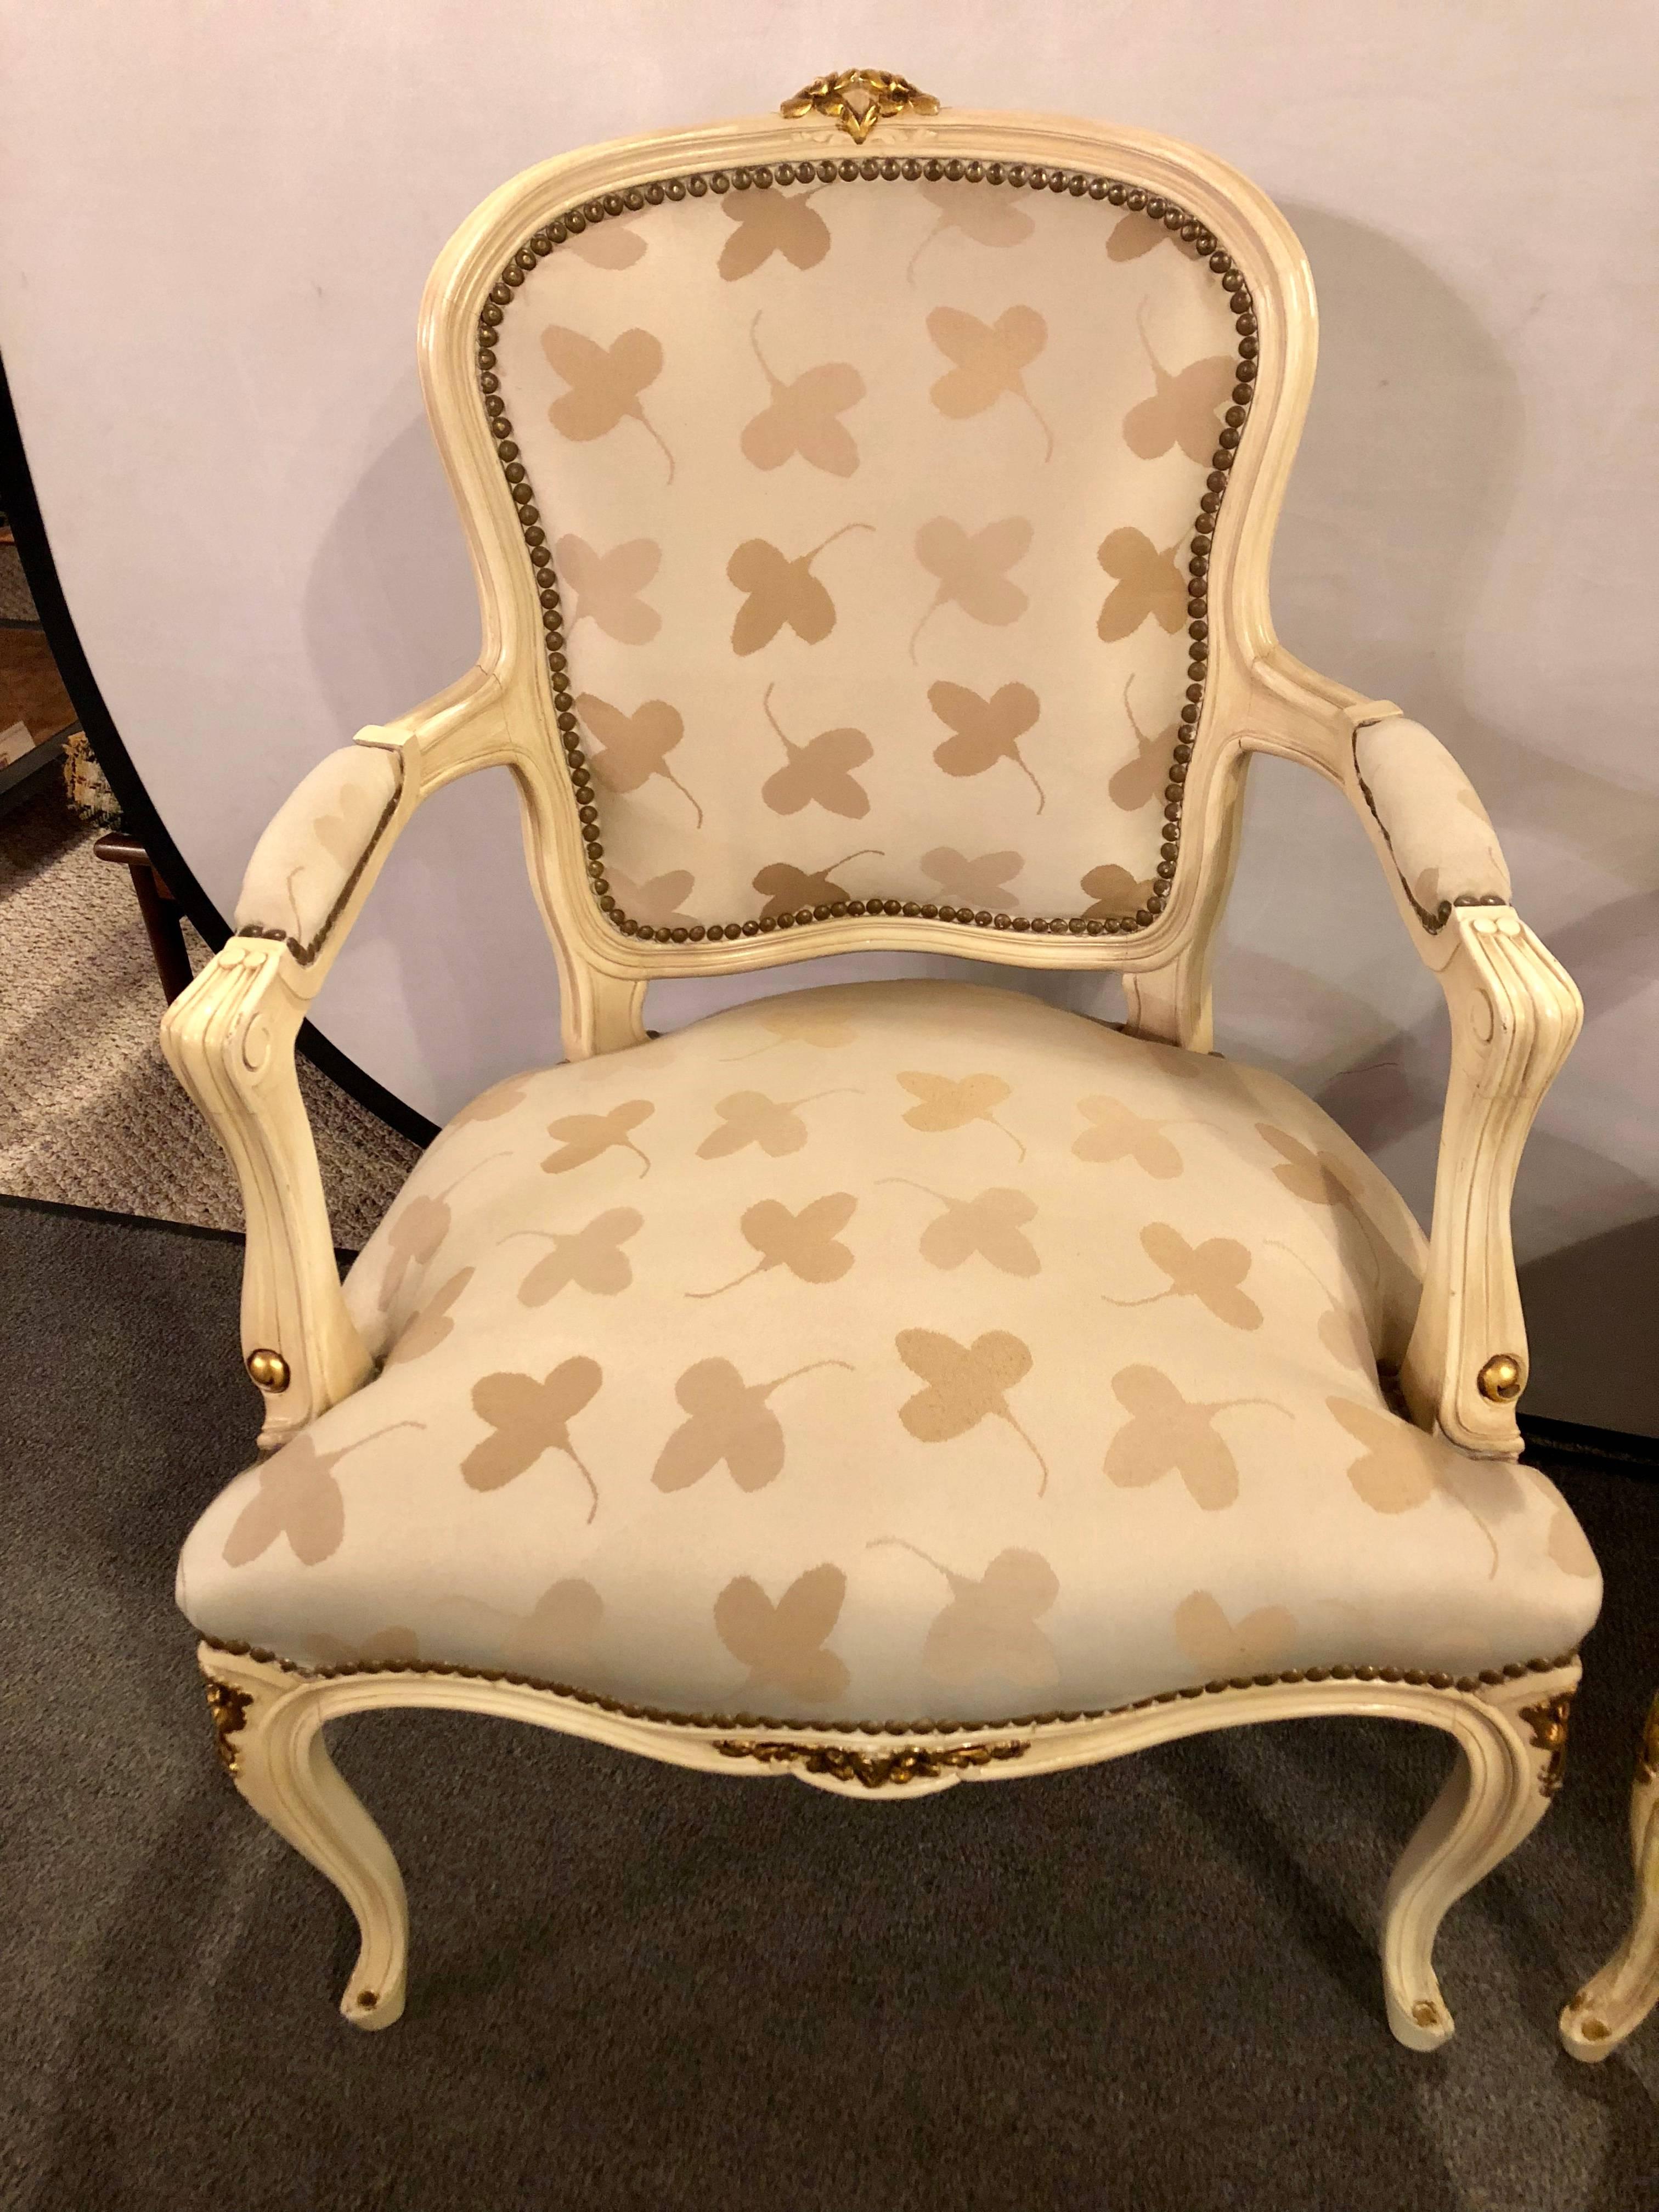 Ein Paar französische Stühle im Stil Louis XV, paketvergoldet und mit Farbe verziert, inspiriert von Jansen. Diese hübschen und eleganten Sessel würden in jedem Wohnzimmer oder Büro spektakulär aussehen. Beide in einem sauberen Tweed-Stil Blatt